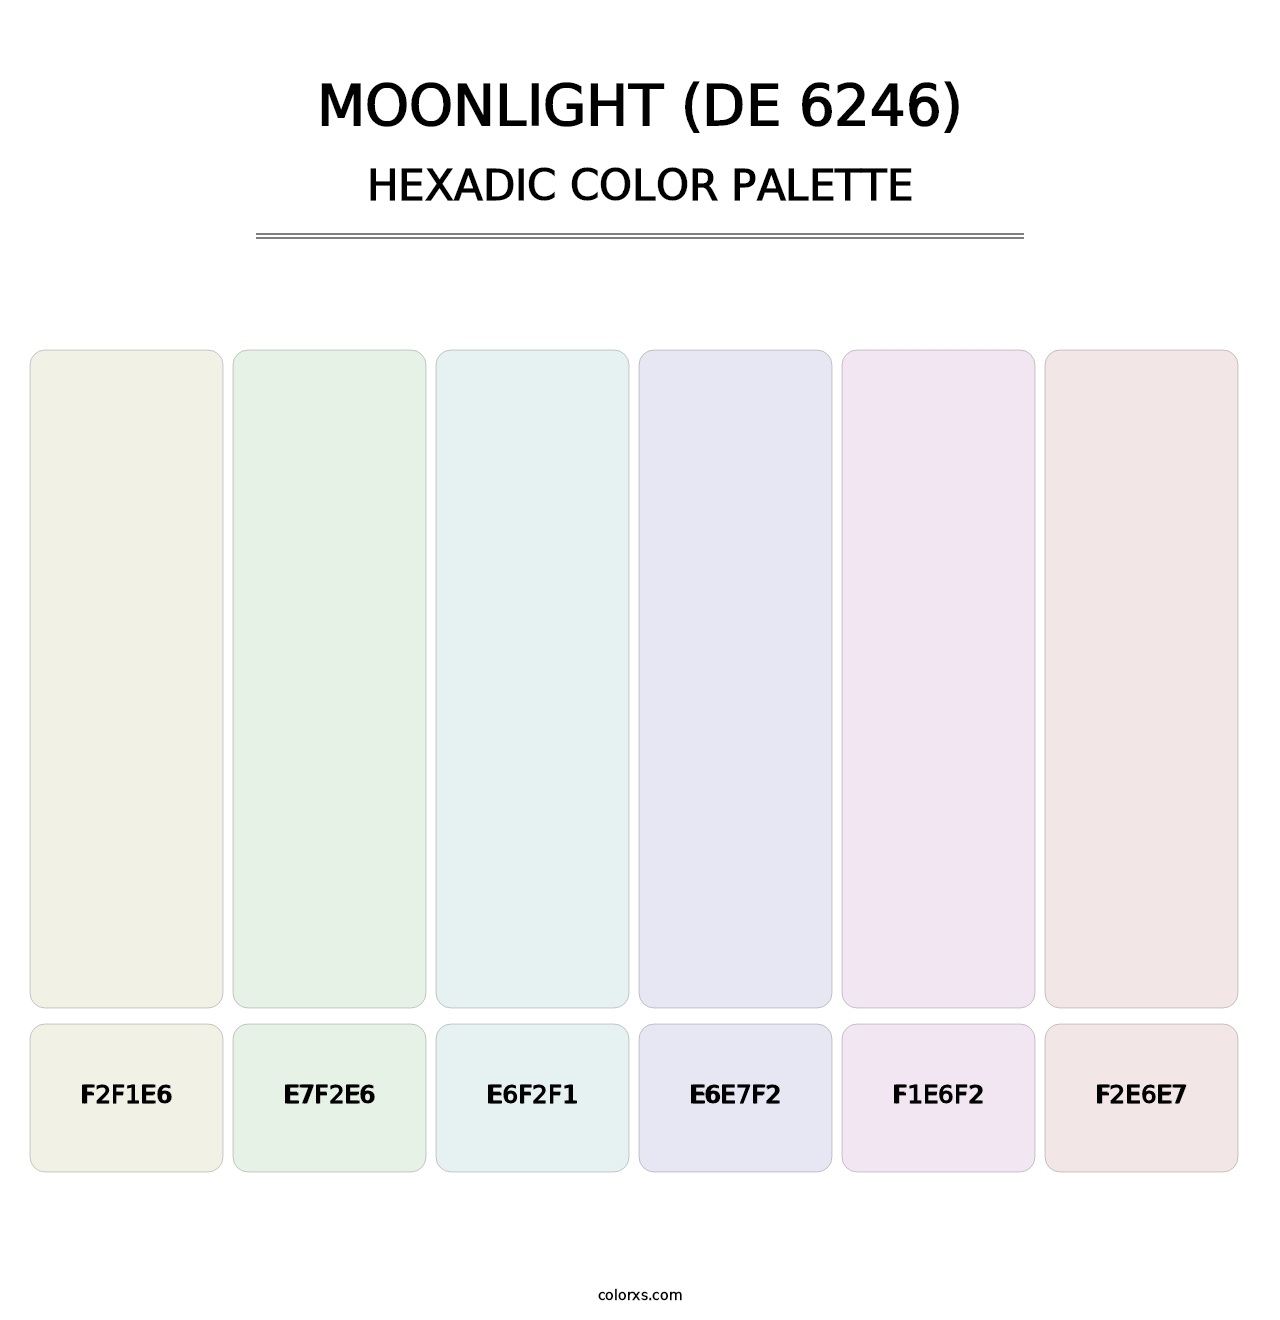 Moonlight (DE 6246) - Hexadic Color Palette